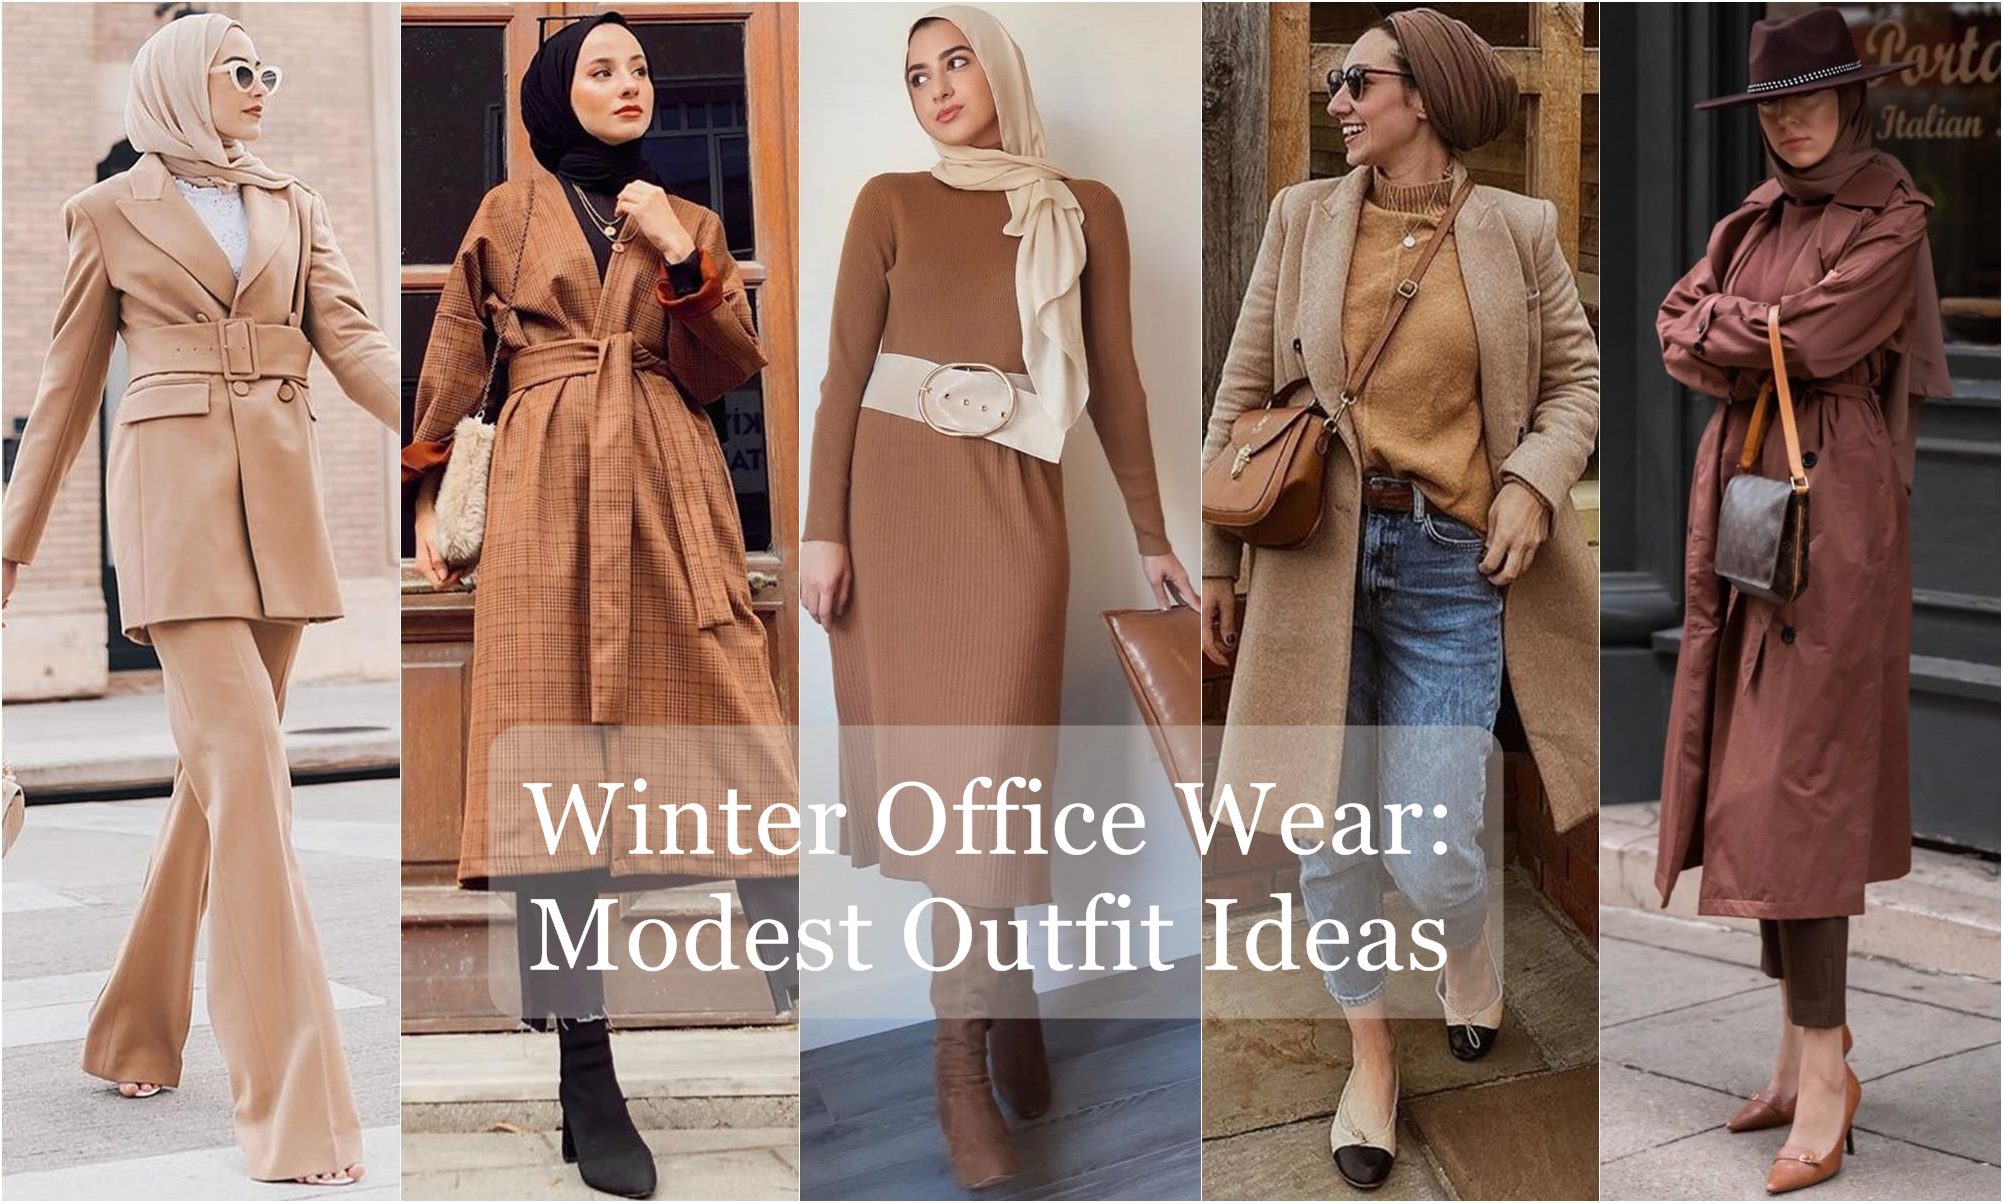 Graceful and Festive: Modest Winter Formal Wear Ideas